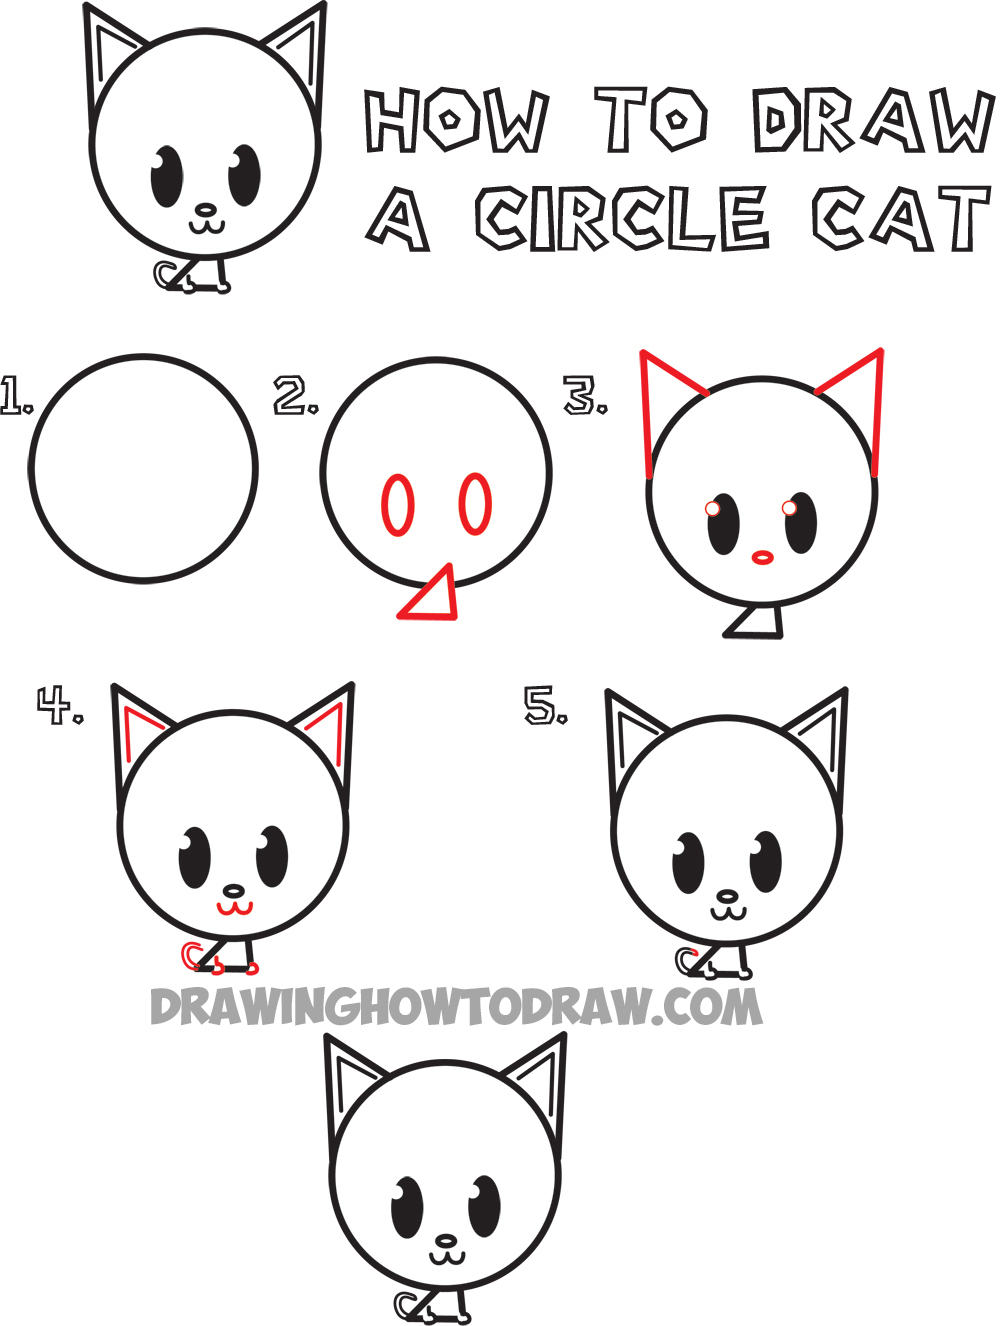 Circle drawing😍 panda drawings😊easy circle drawing😀 easy circle  scenery❤: panda drawing in circle⭕ - YouTube